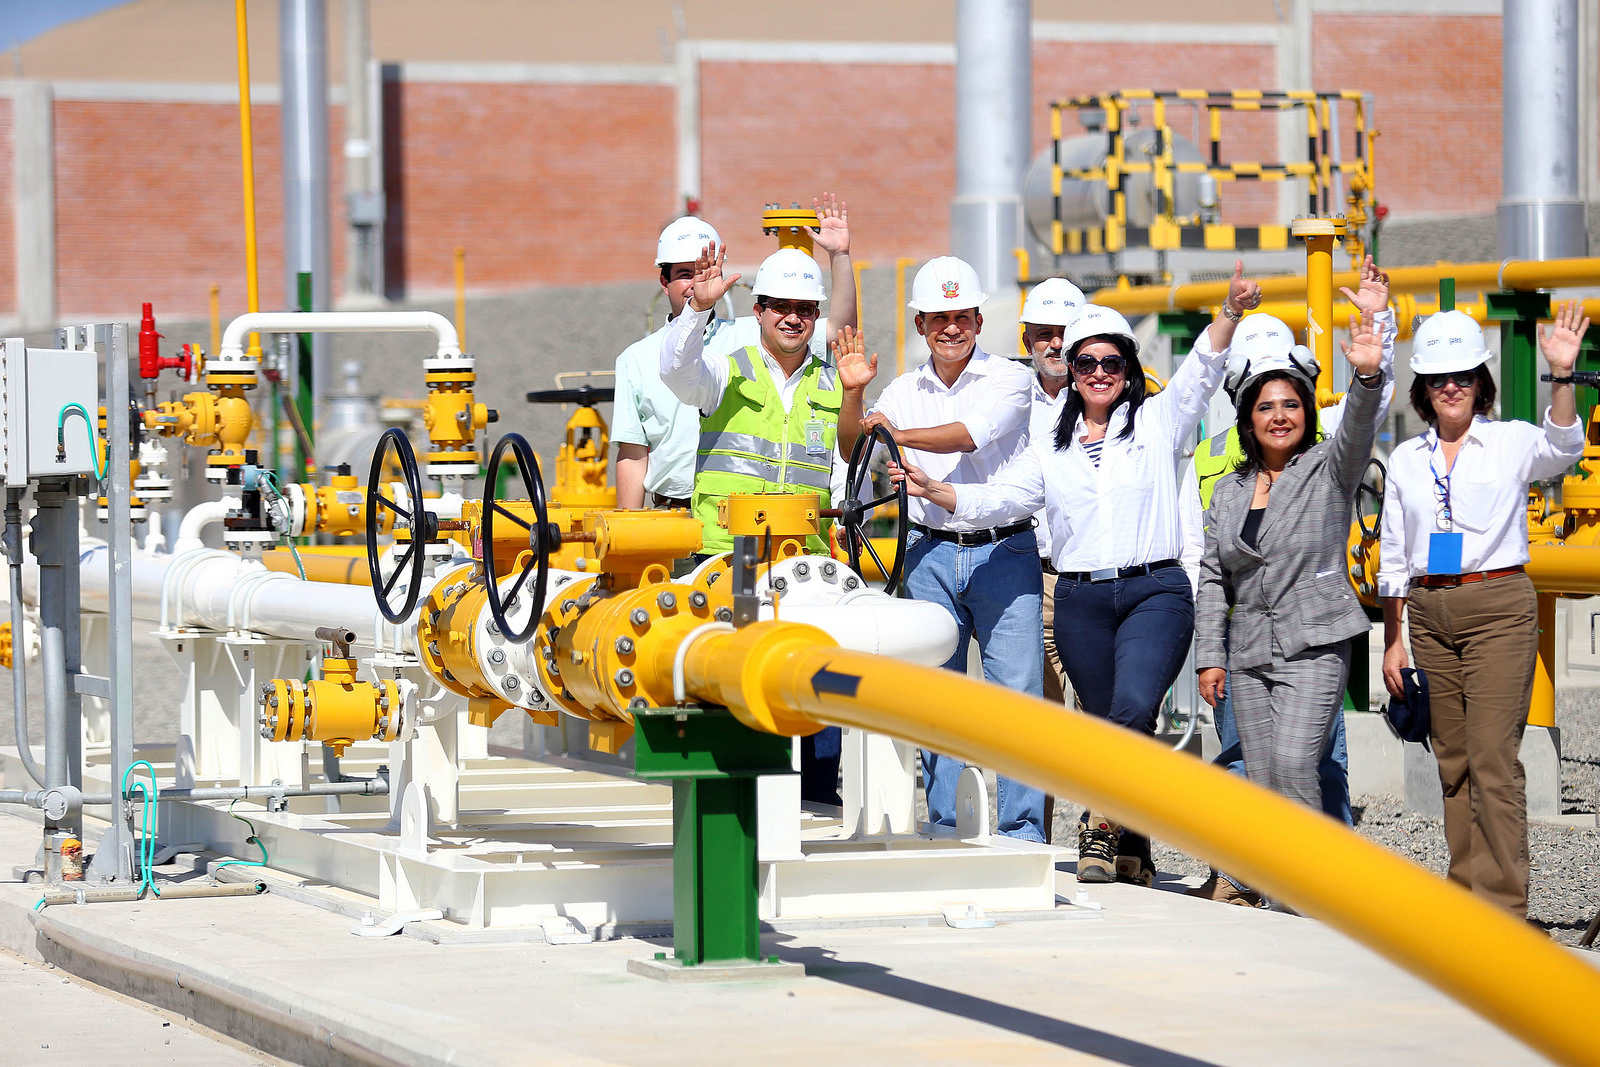 Pipeline initiates a revolution for Ica’s economic development 